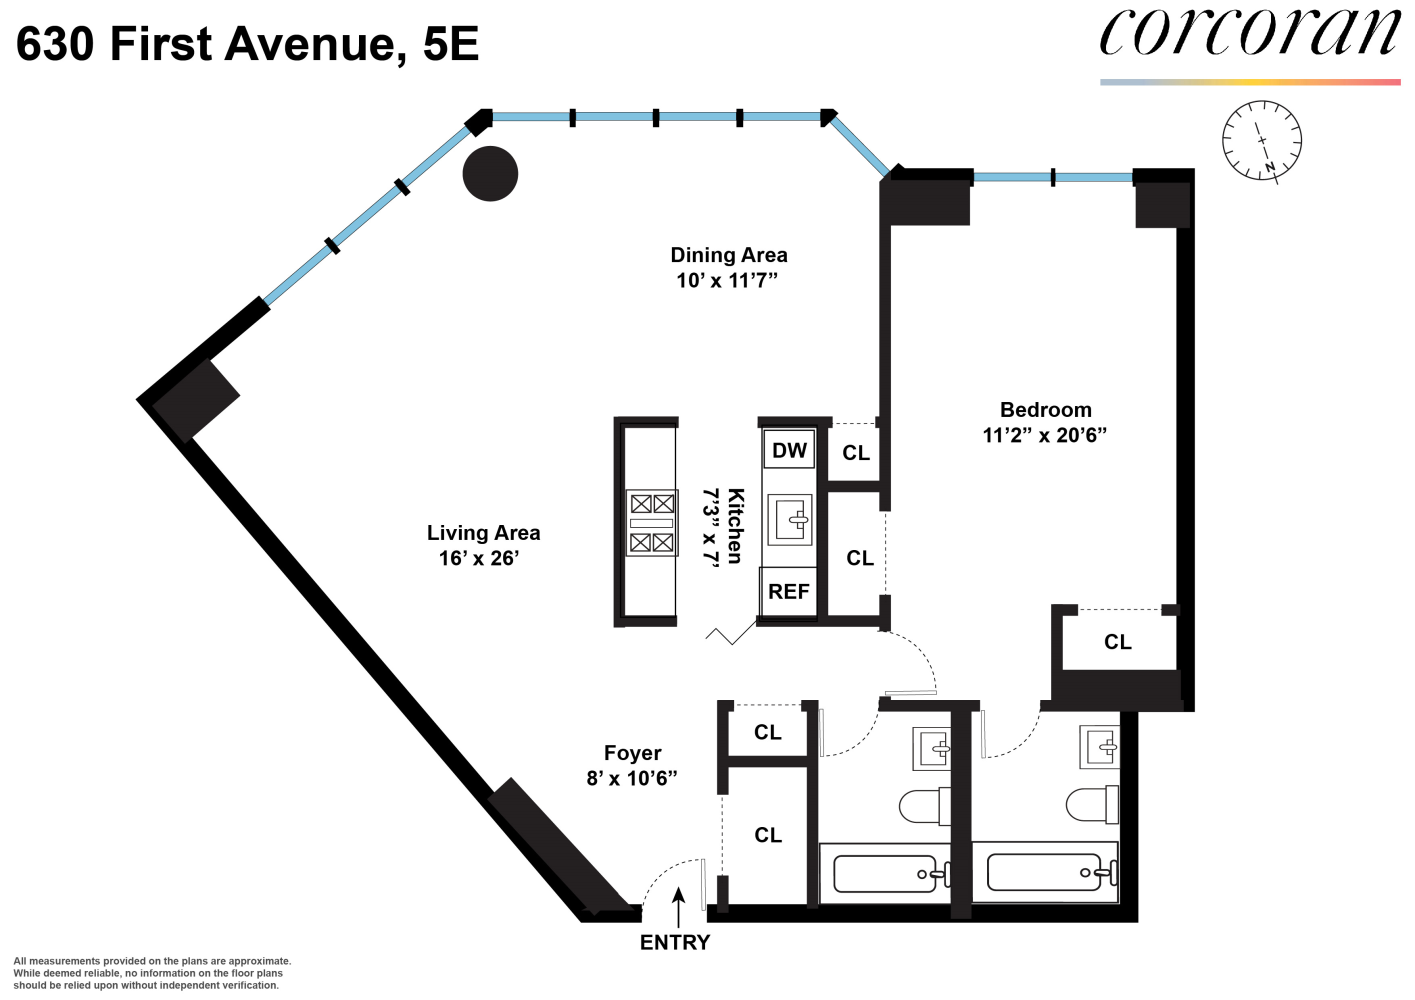 Floorplan for 630 1st Avenue, 5E